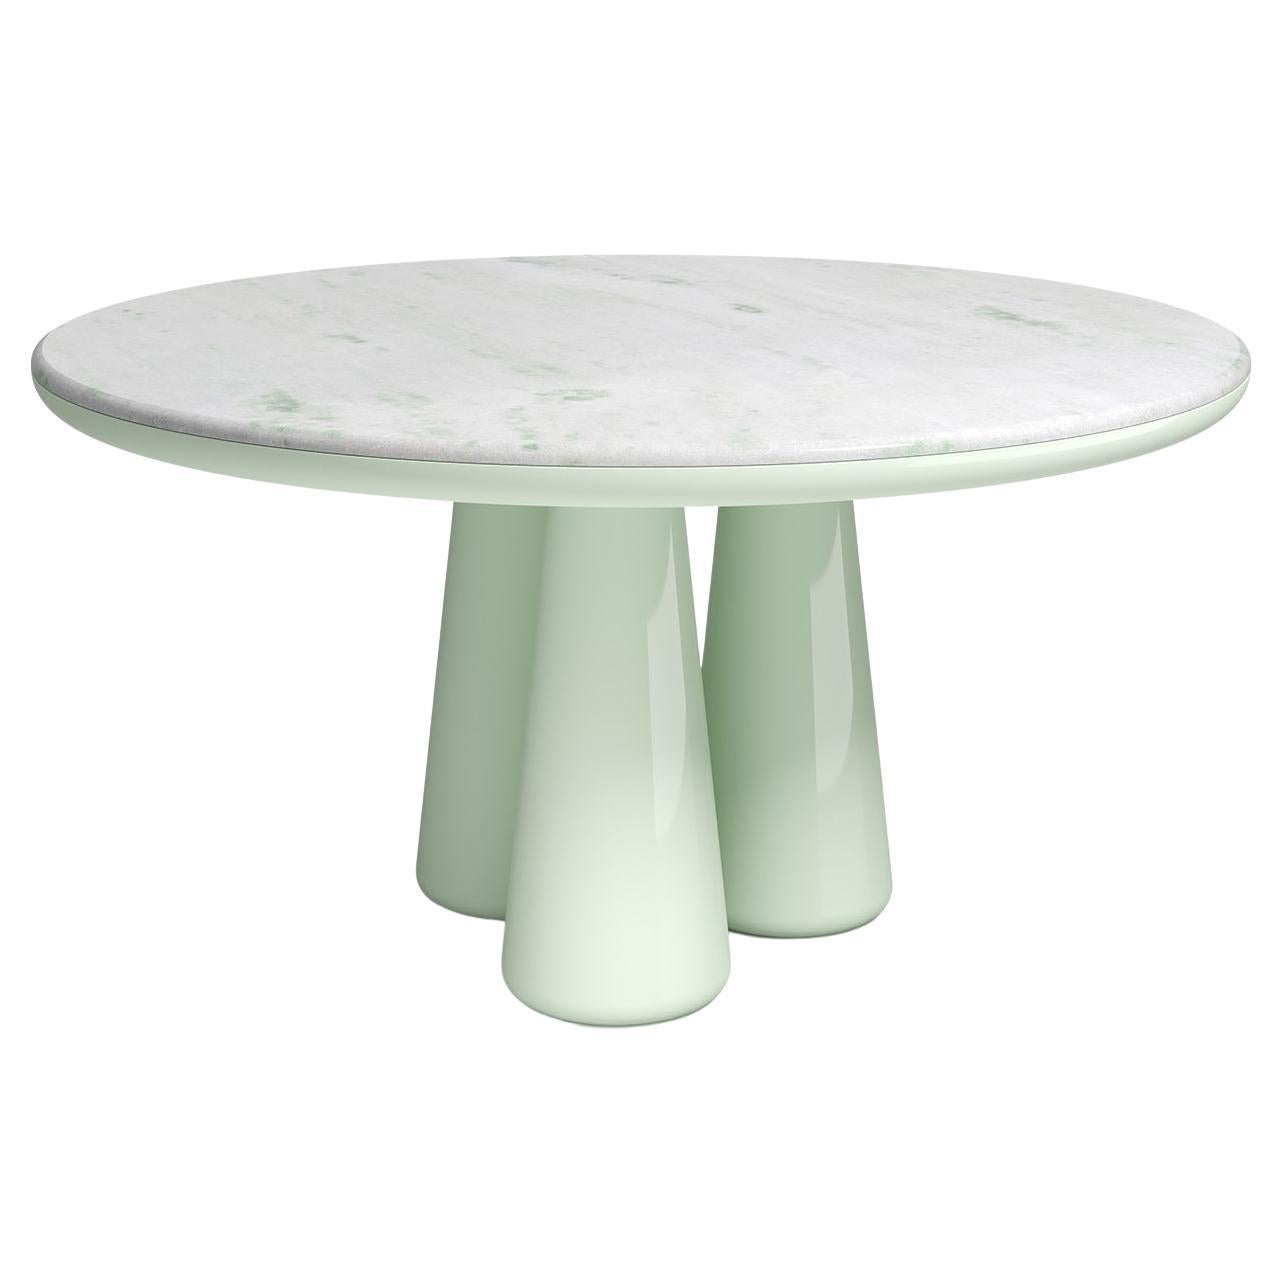 Table Isotopo Design/One, produit par Scapin Collezioni
Édition limitée

Un plateau rond vibrant est associé à une base sculpturale composée de trois supports coniques arrondis qui confèrent au produit une forte tridimensionnalité.
Matériaux :